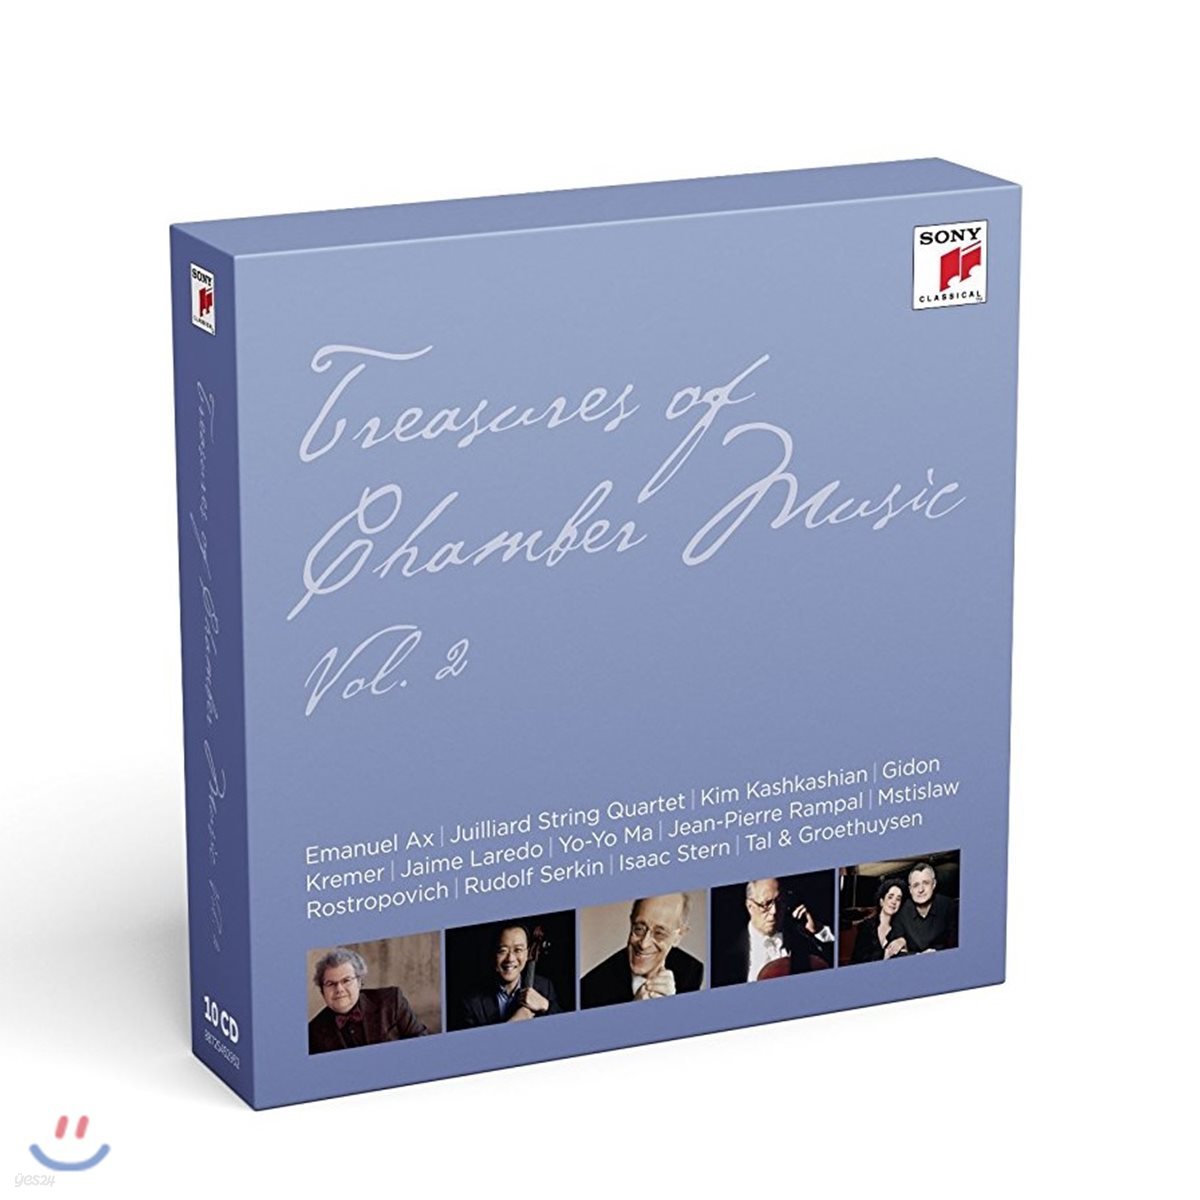 소니 클래시컬 실내악 명연주 모음집 (Treasures of Chamber Music Vol. 2)